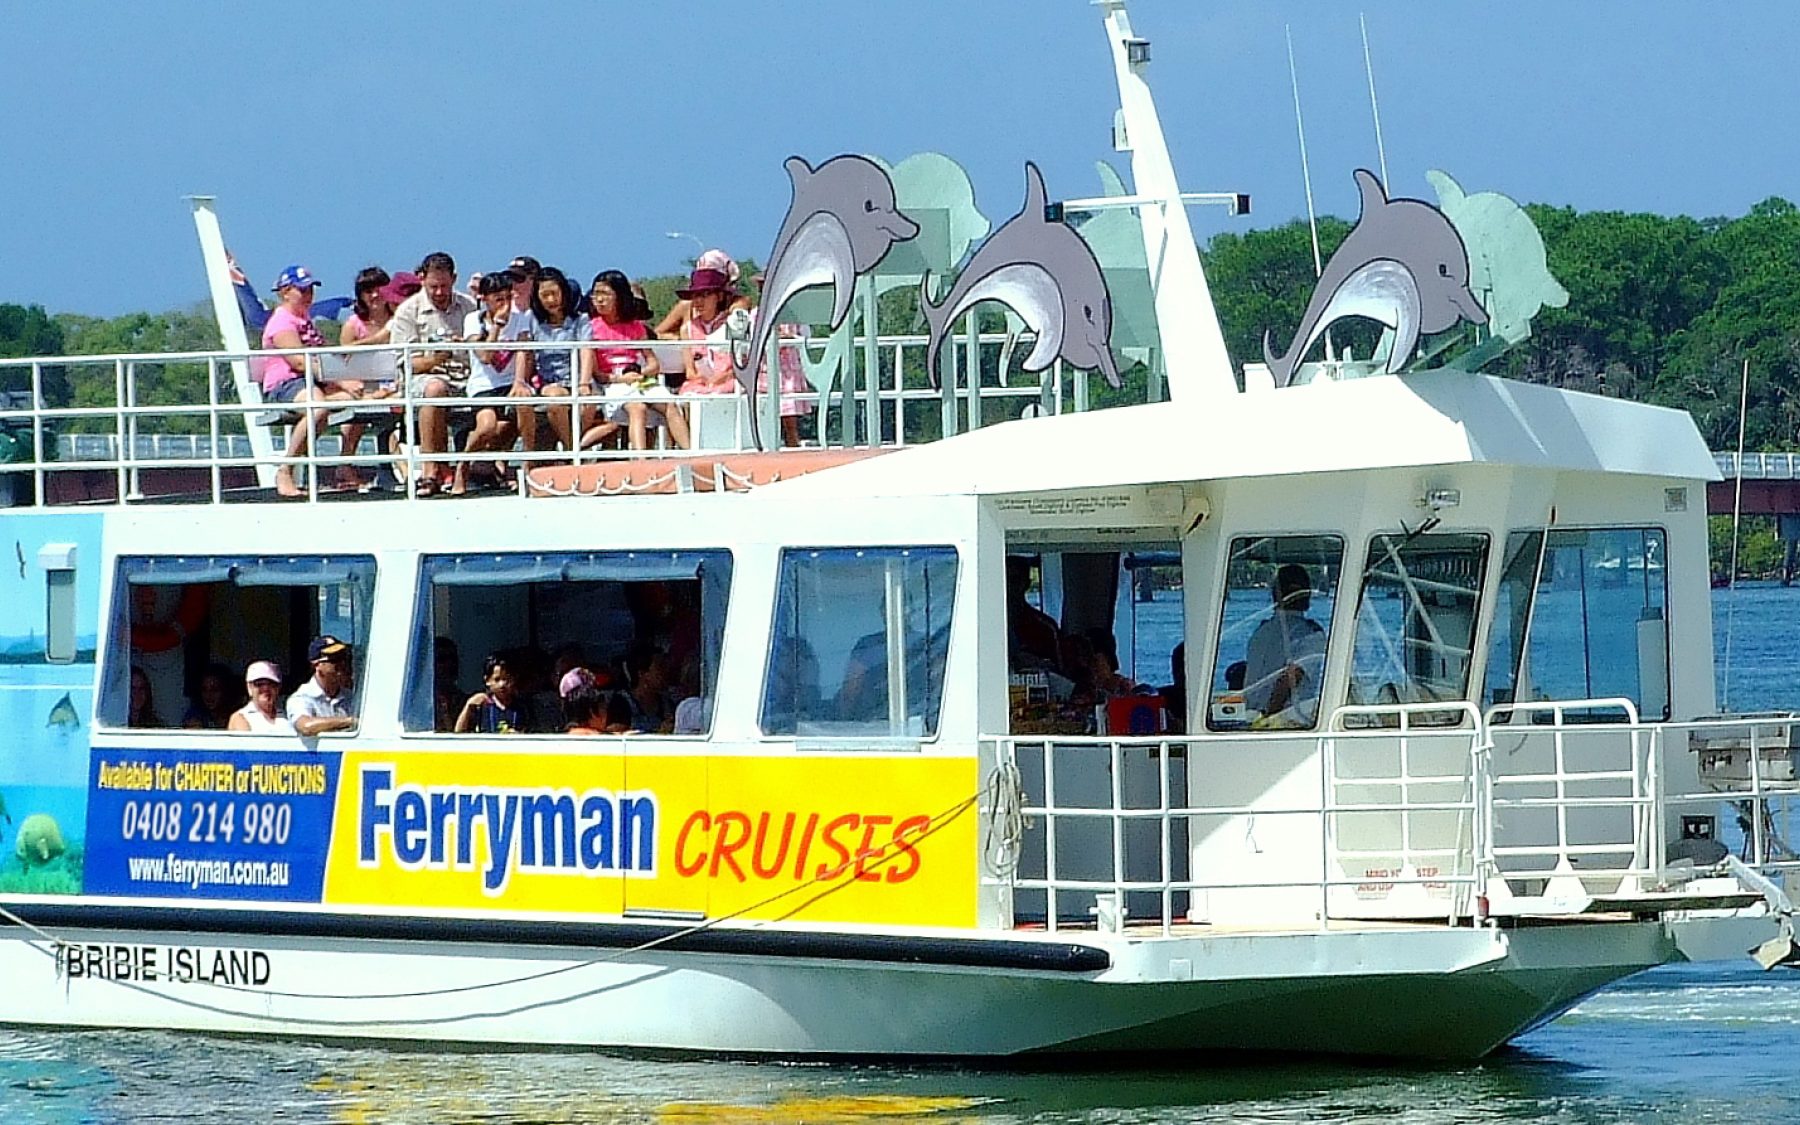 bribie island ferryman cruises